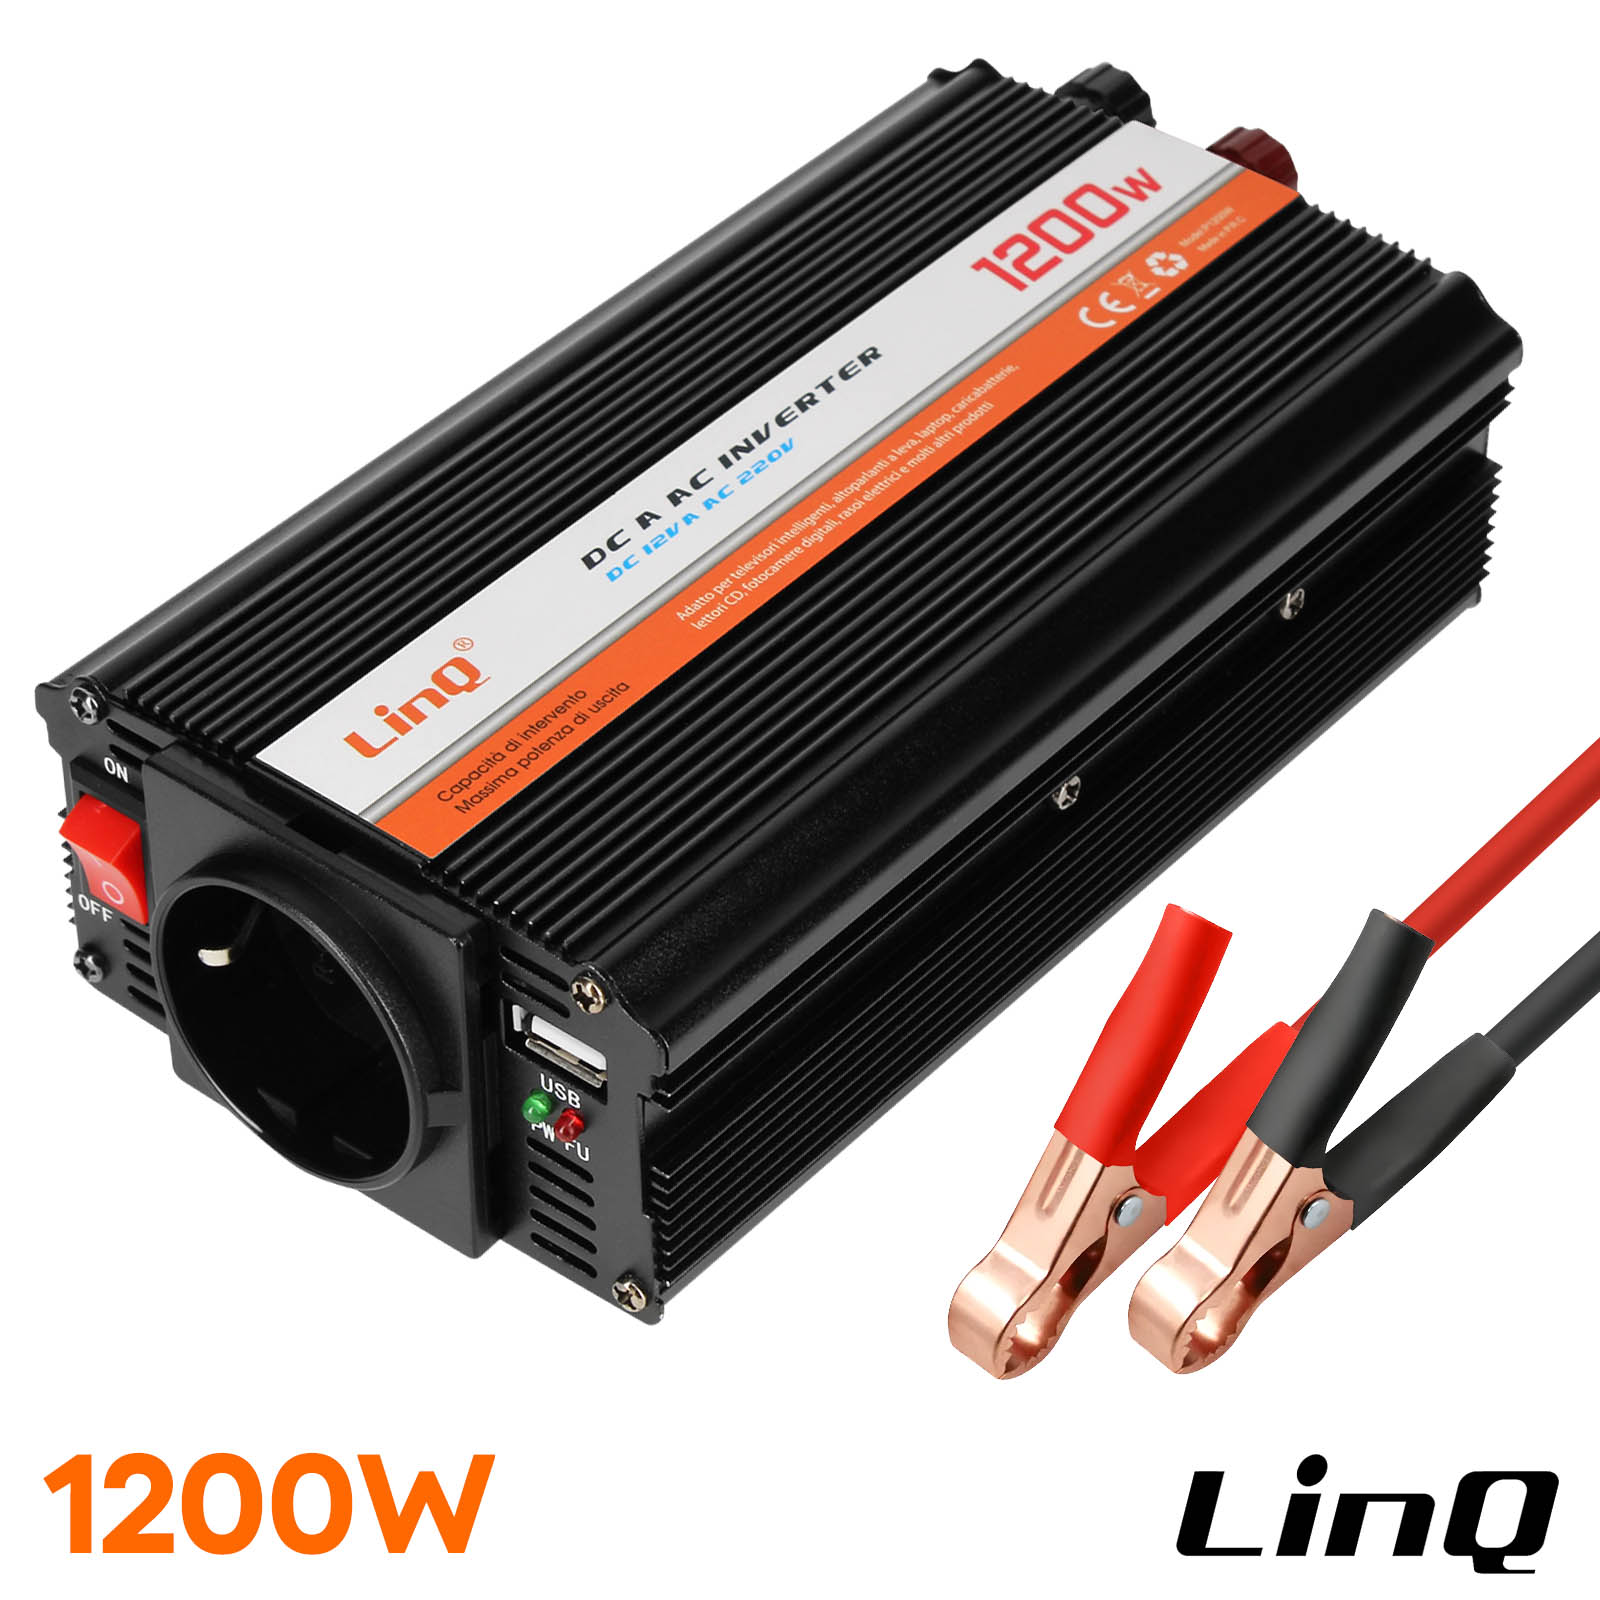 Convertitore di tensione 1200W - 12V / 220V - USB + presa UE - LinQ -  Italiano